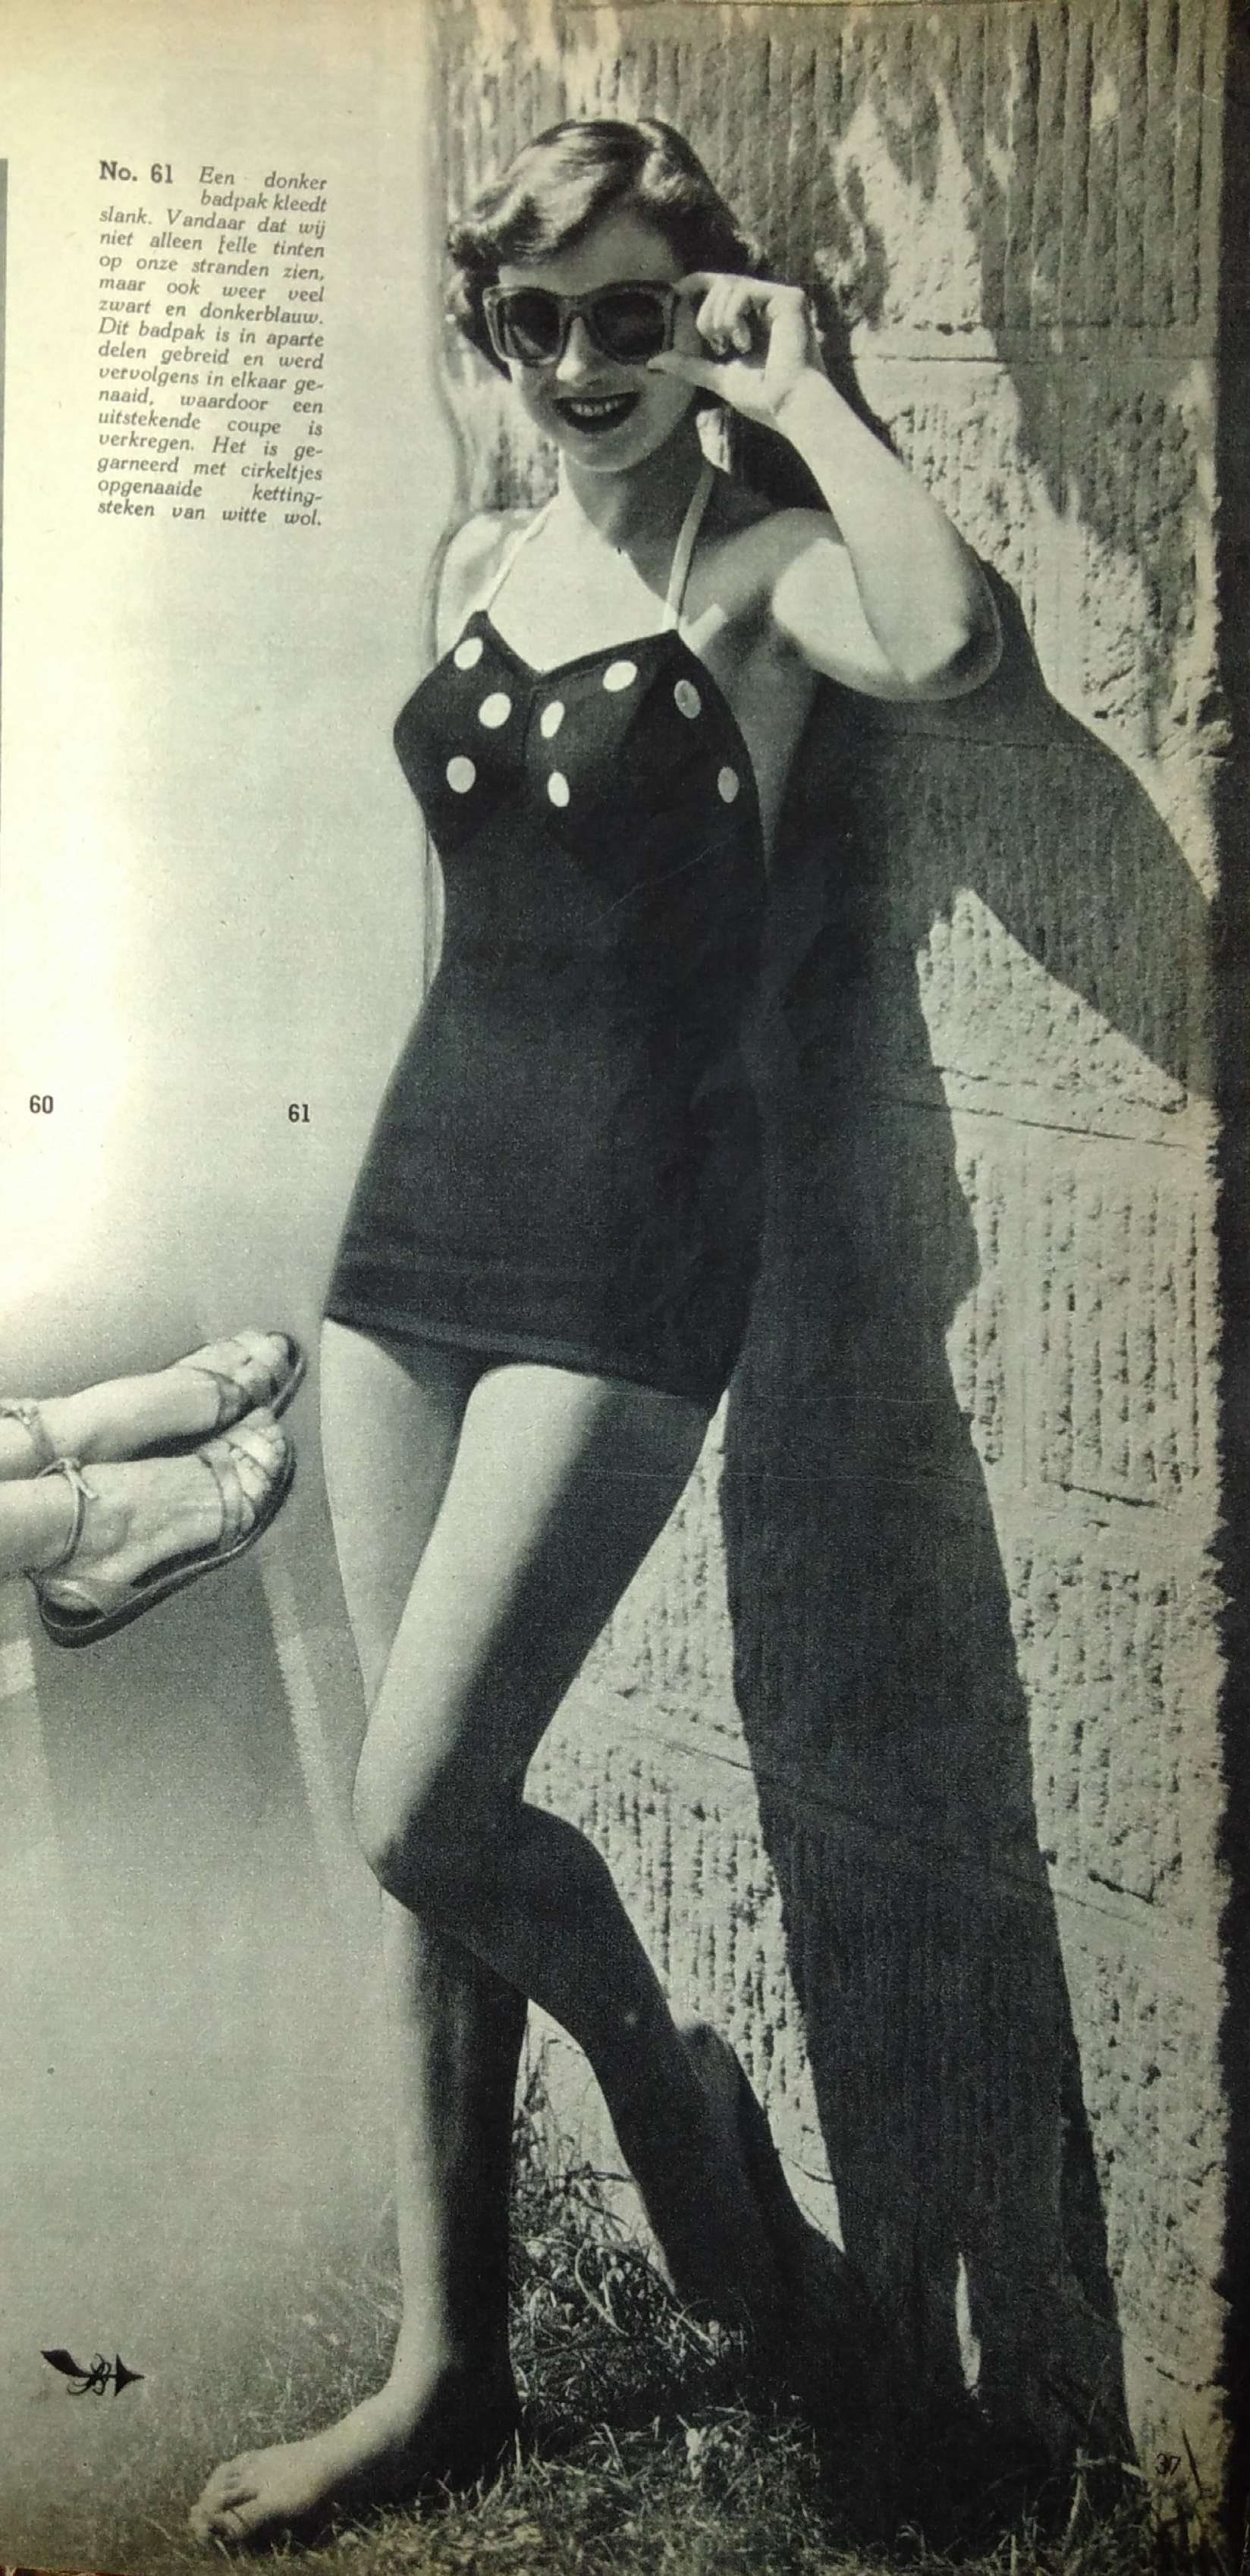 Foto van een patroon voor een gebreid badpak uit Margriet Breishow, 1954